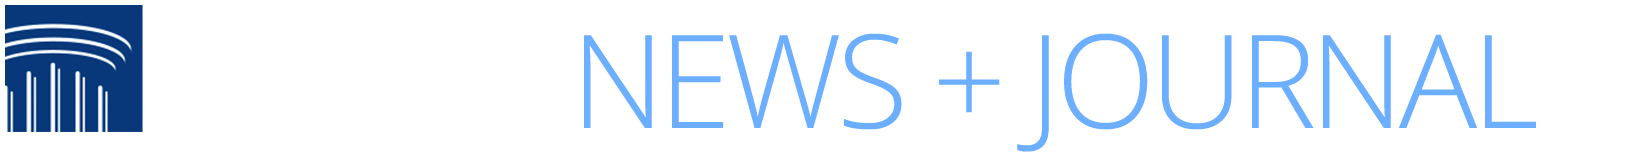 NAELA News Journal Online Logo